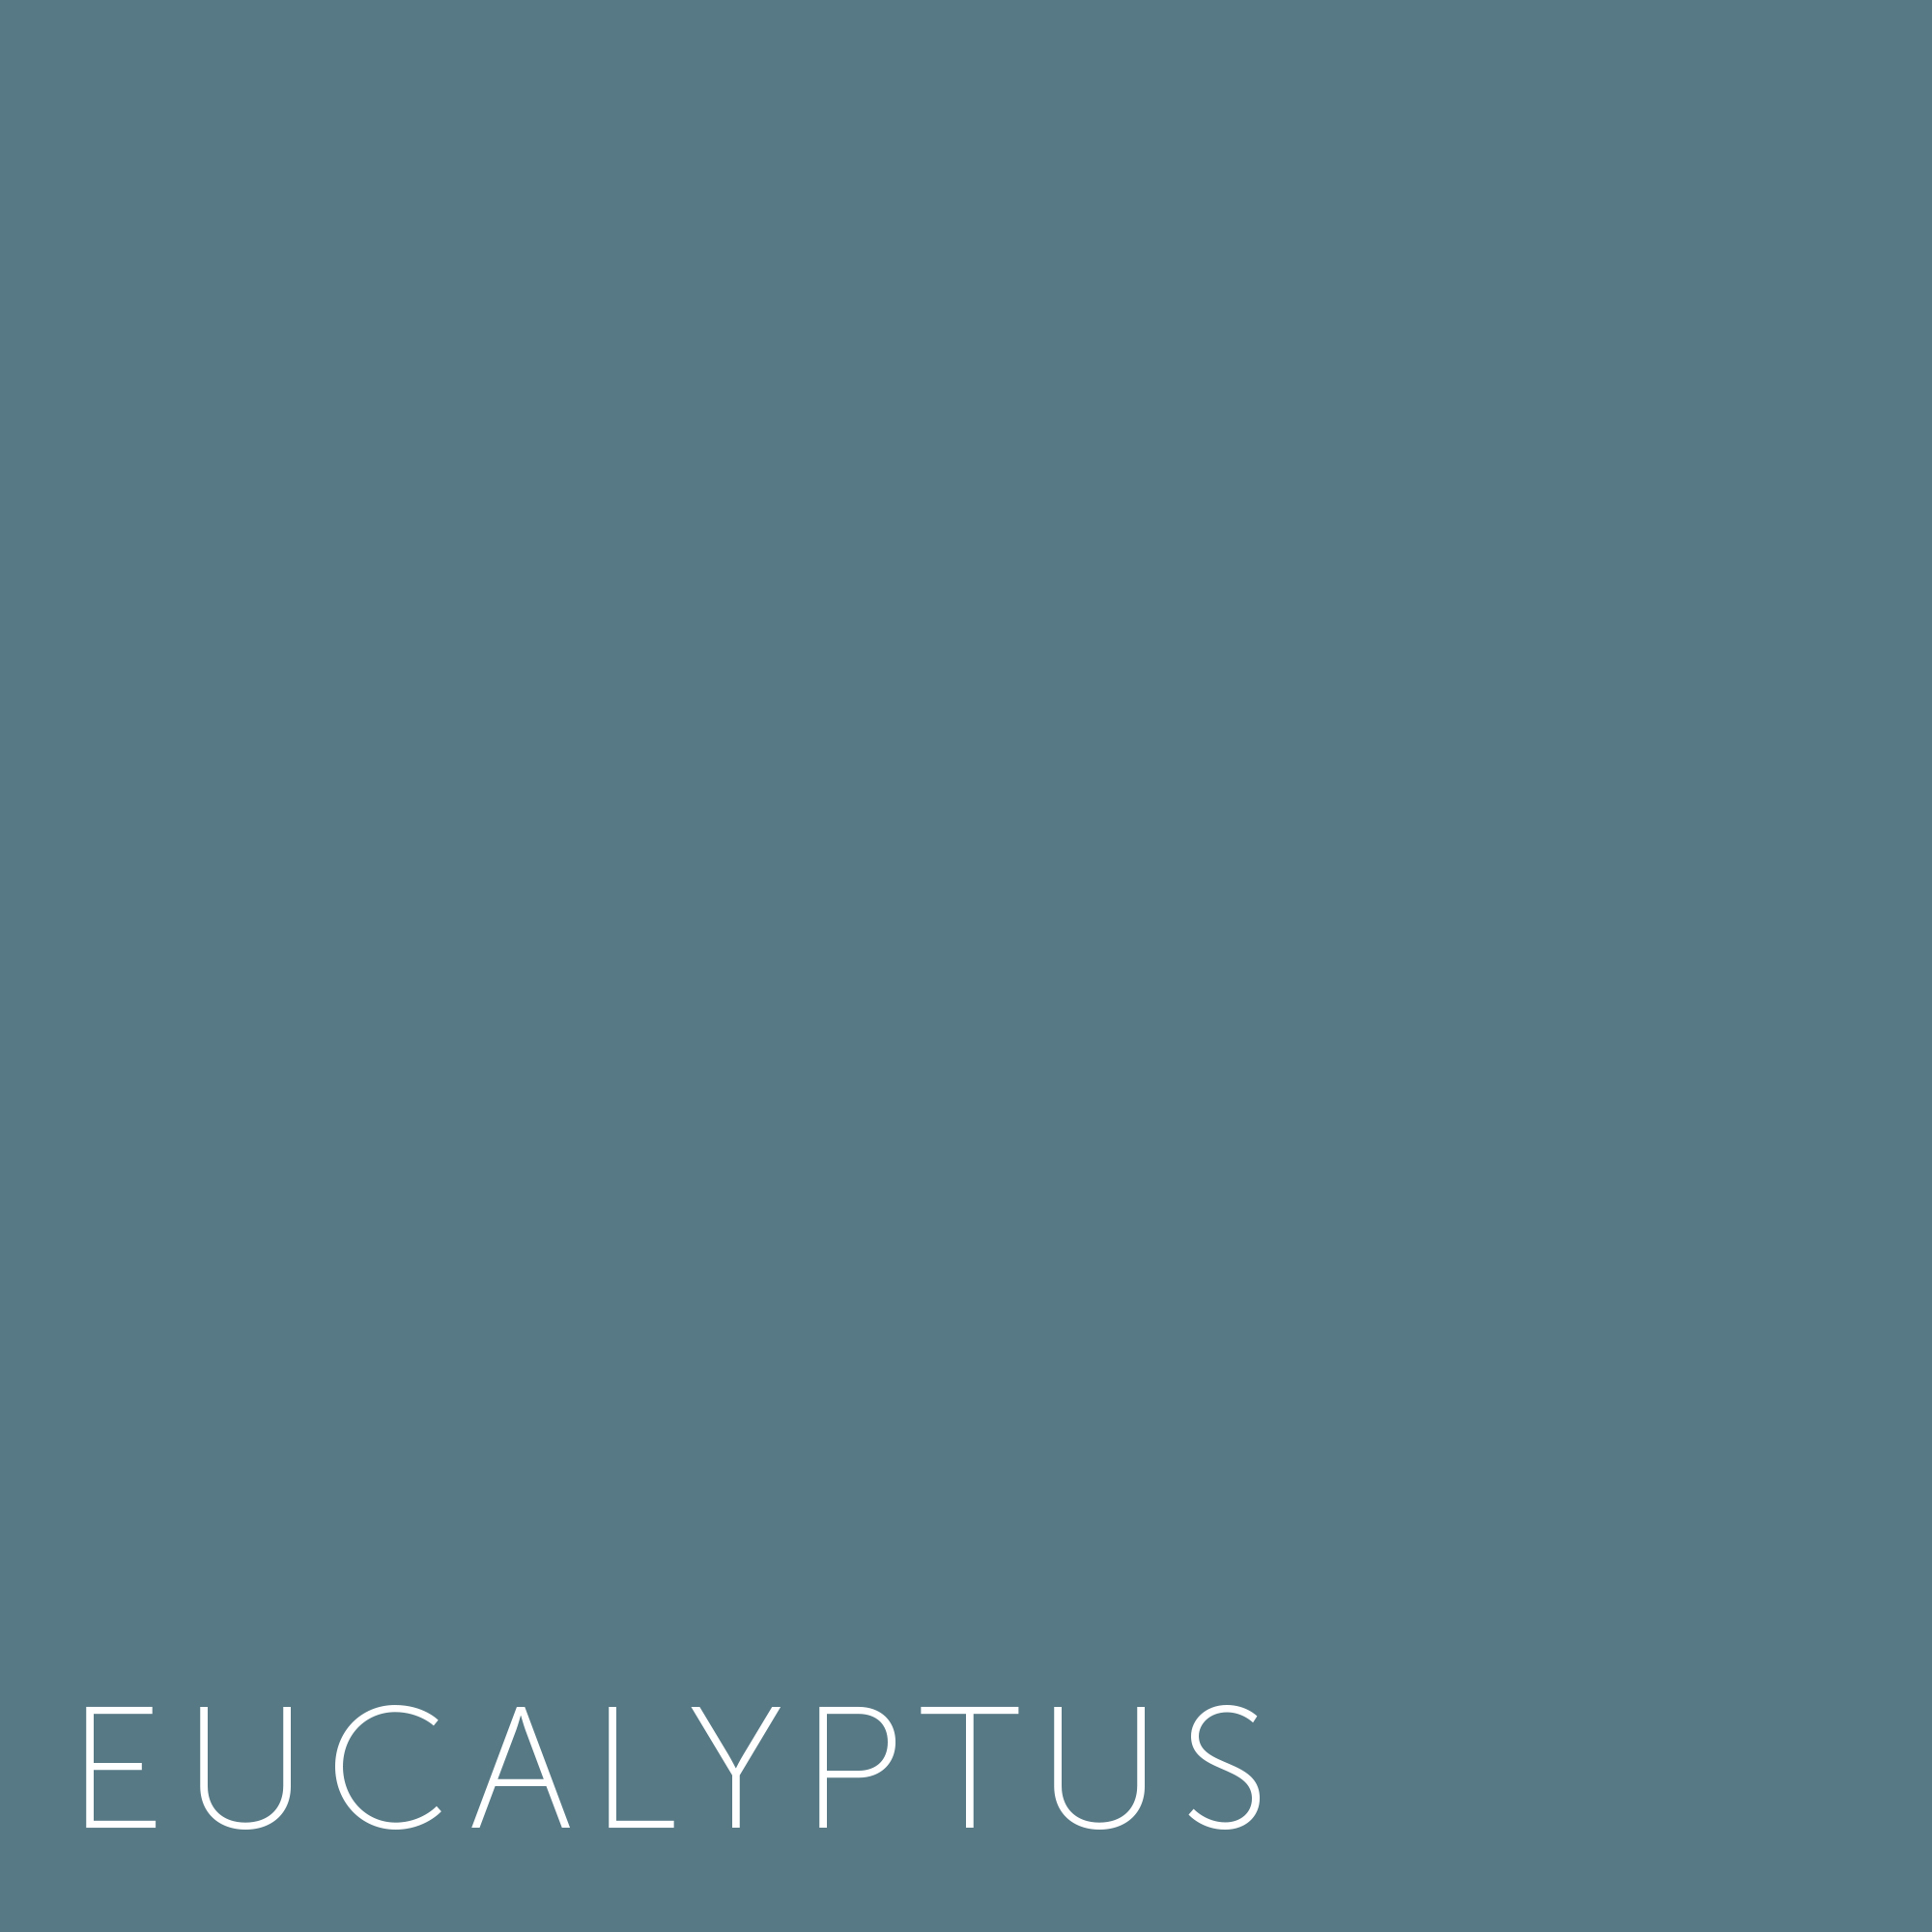 Spiksplinternieuw Verf - Kleuren Eucalyptus | Home Made By XP-12